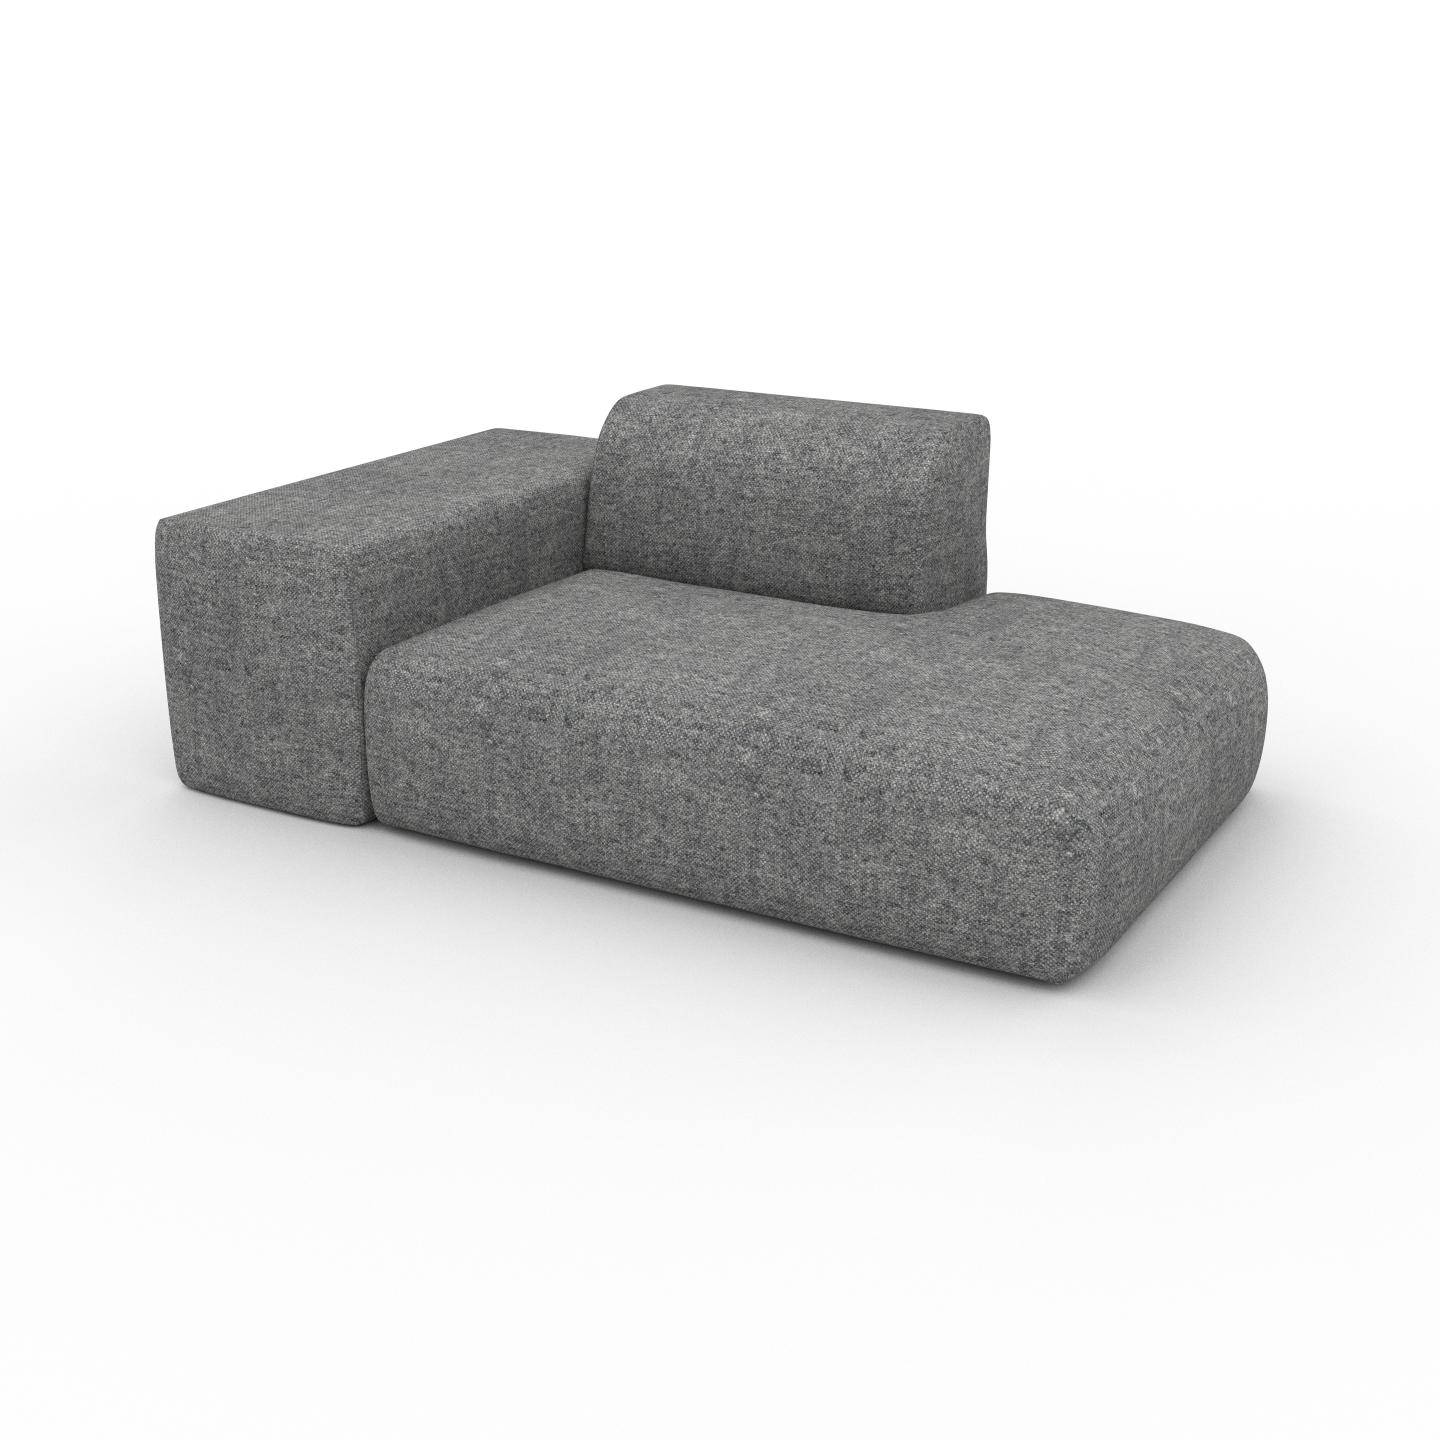 MYCS Sofa Steingrau - Moderne Designer-Couch: Hochwertige Qualität, einzigartiges Design - 182 x 72 x 107 cm, Komplett anpassbar